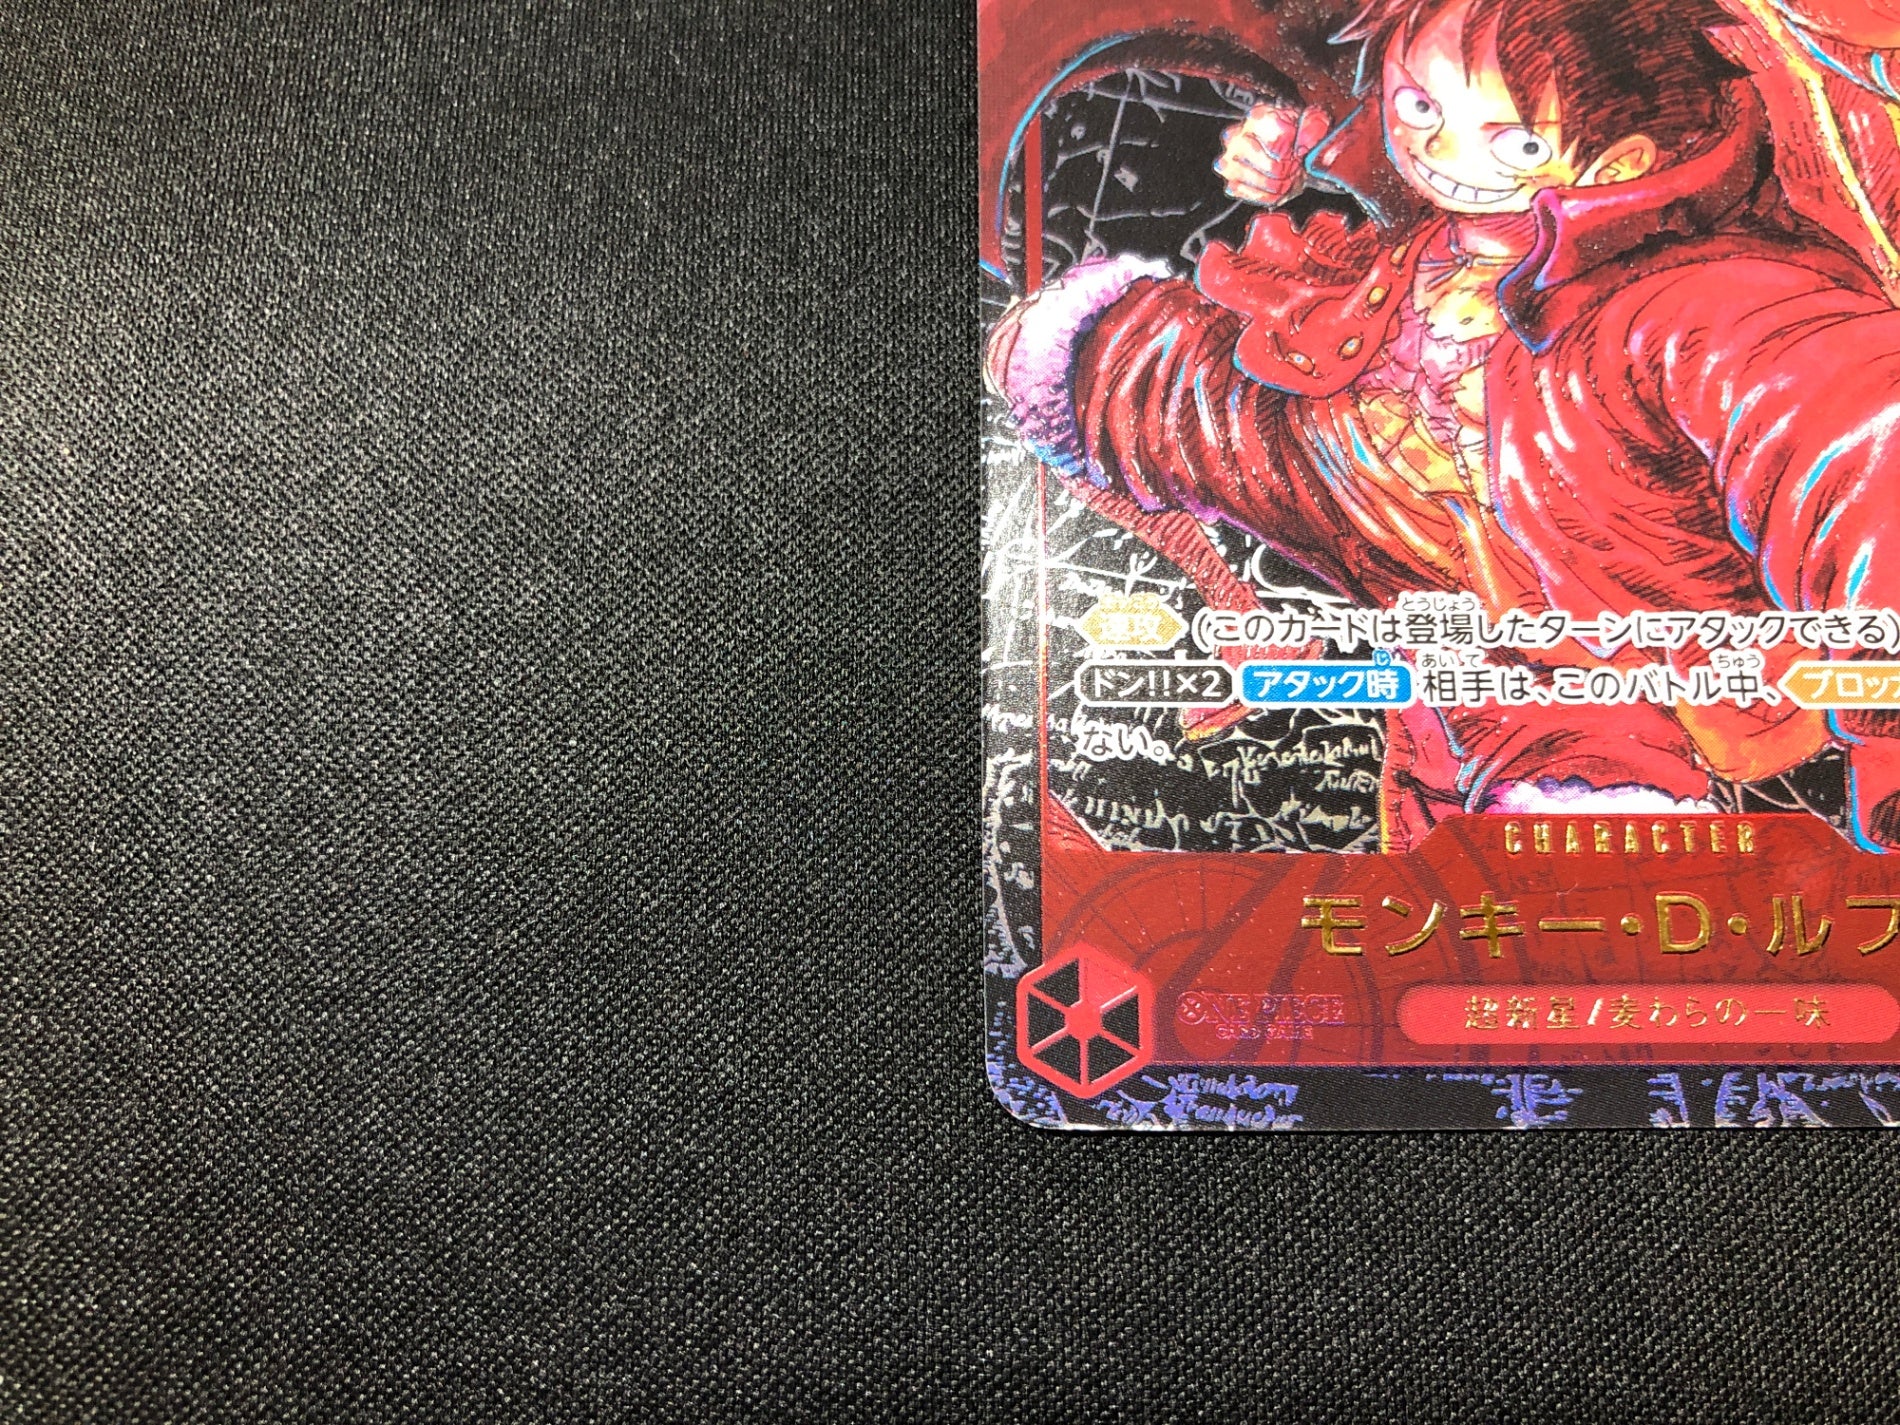 モンキー・D・ルフィ SR パラレル (ST01-012) – カードショップ GOTCHA!